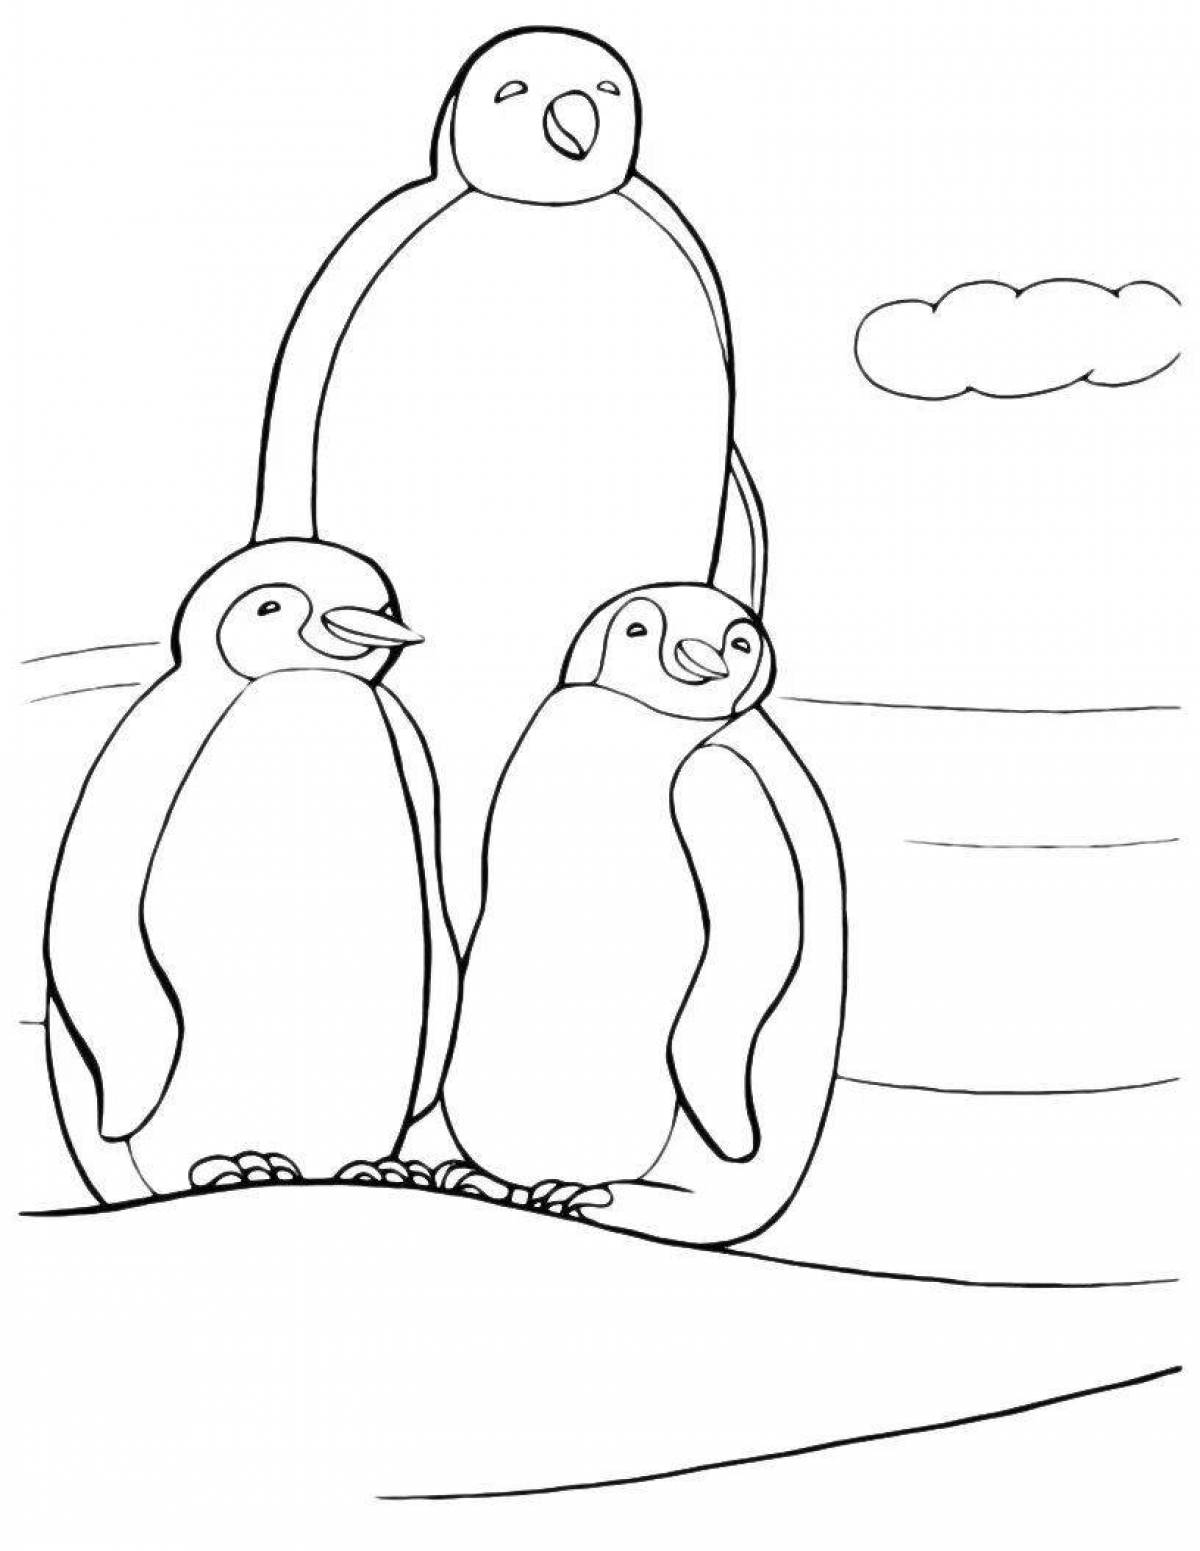 Анимированная страница раскраски семьи пингвинов